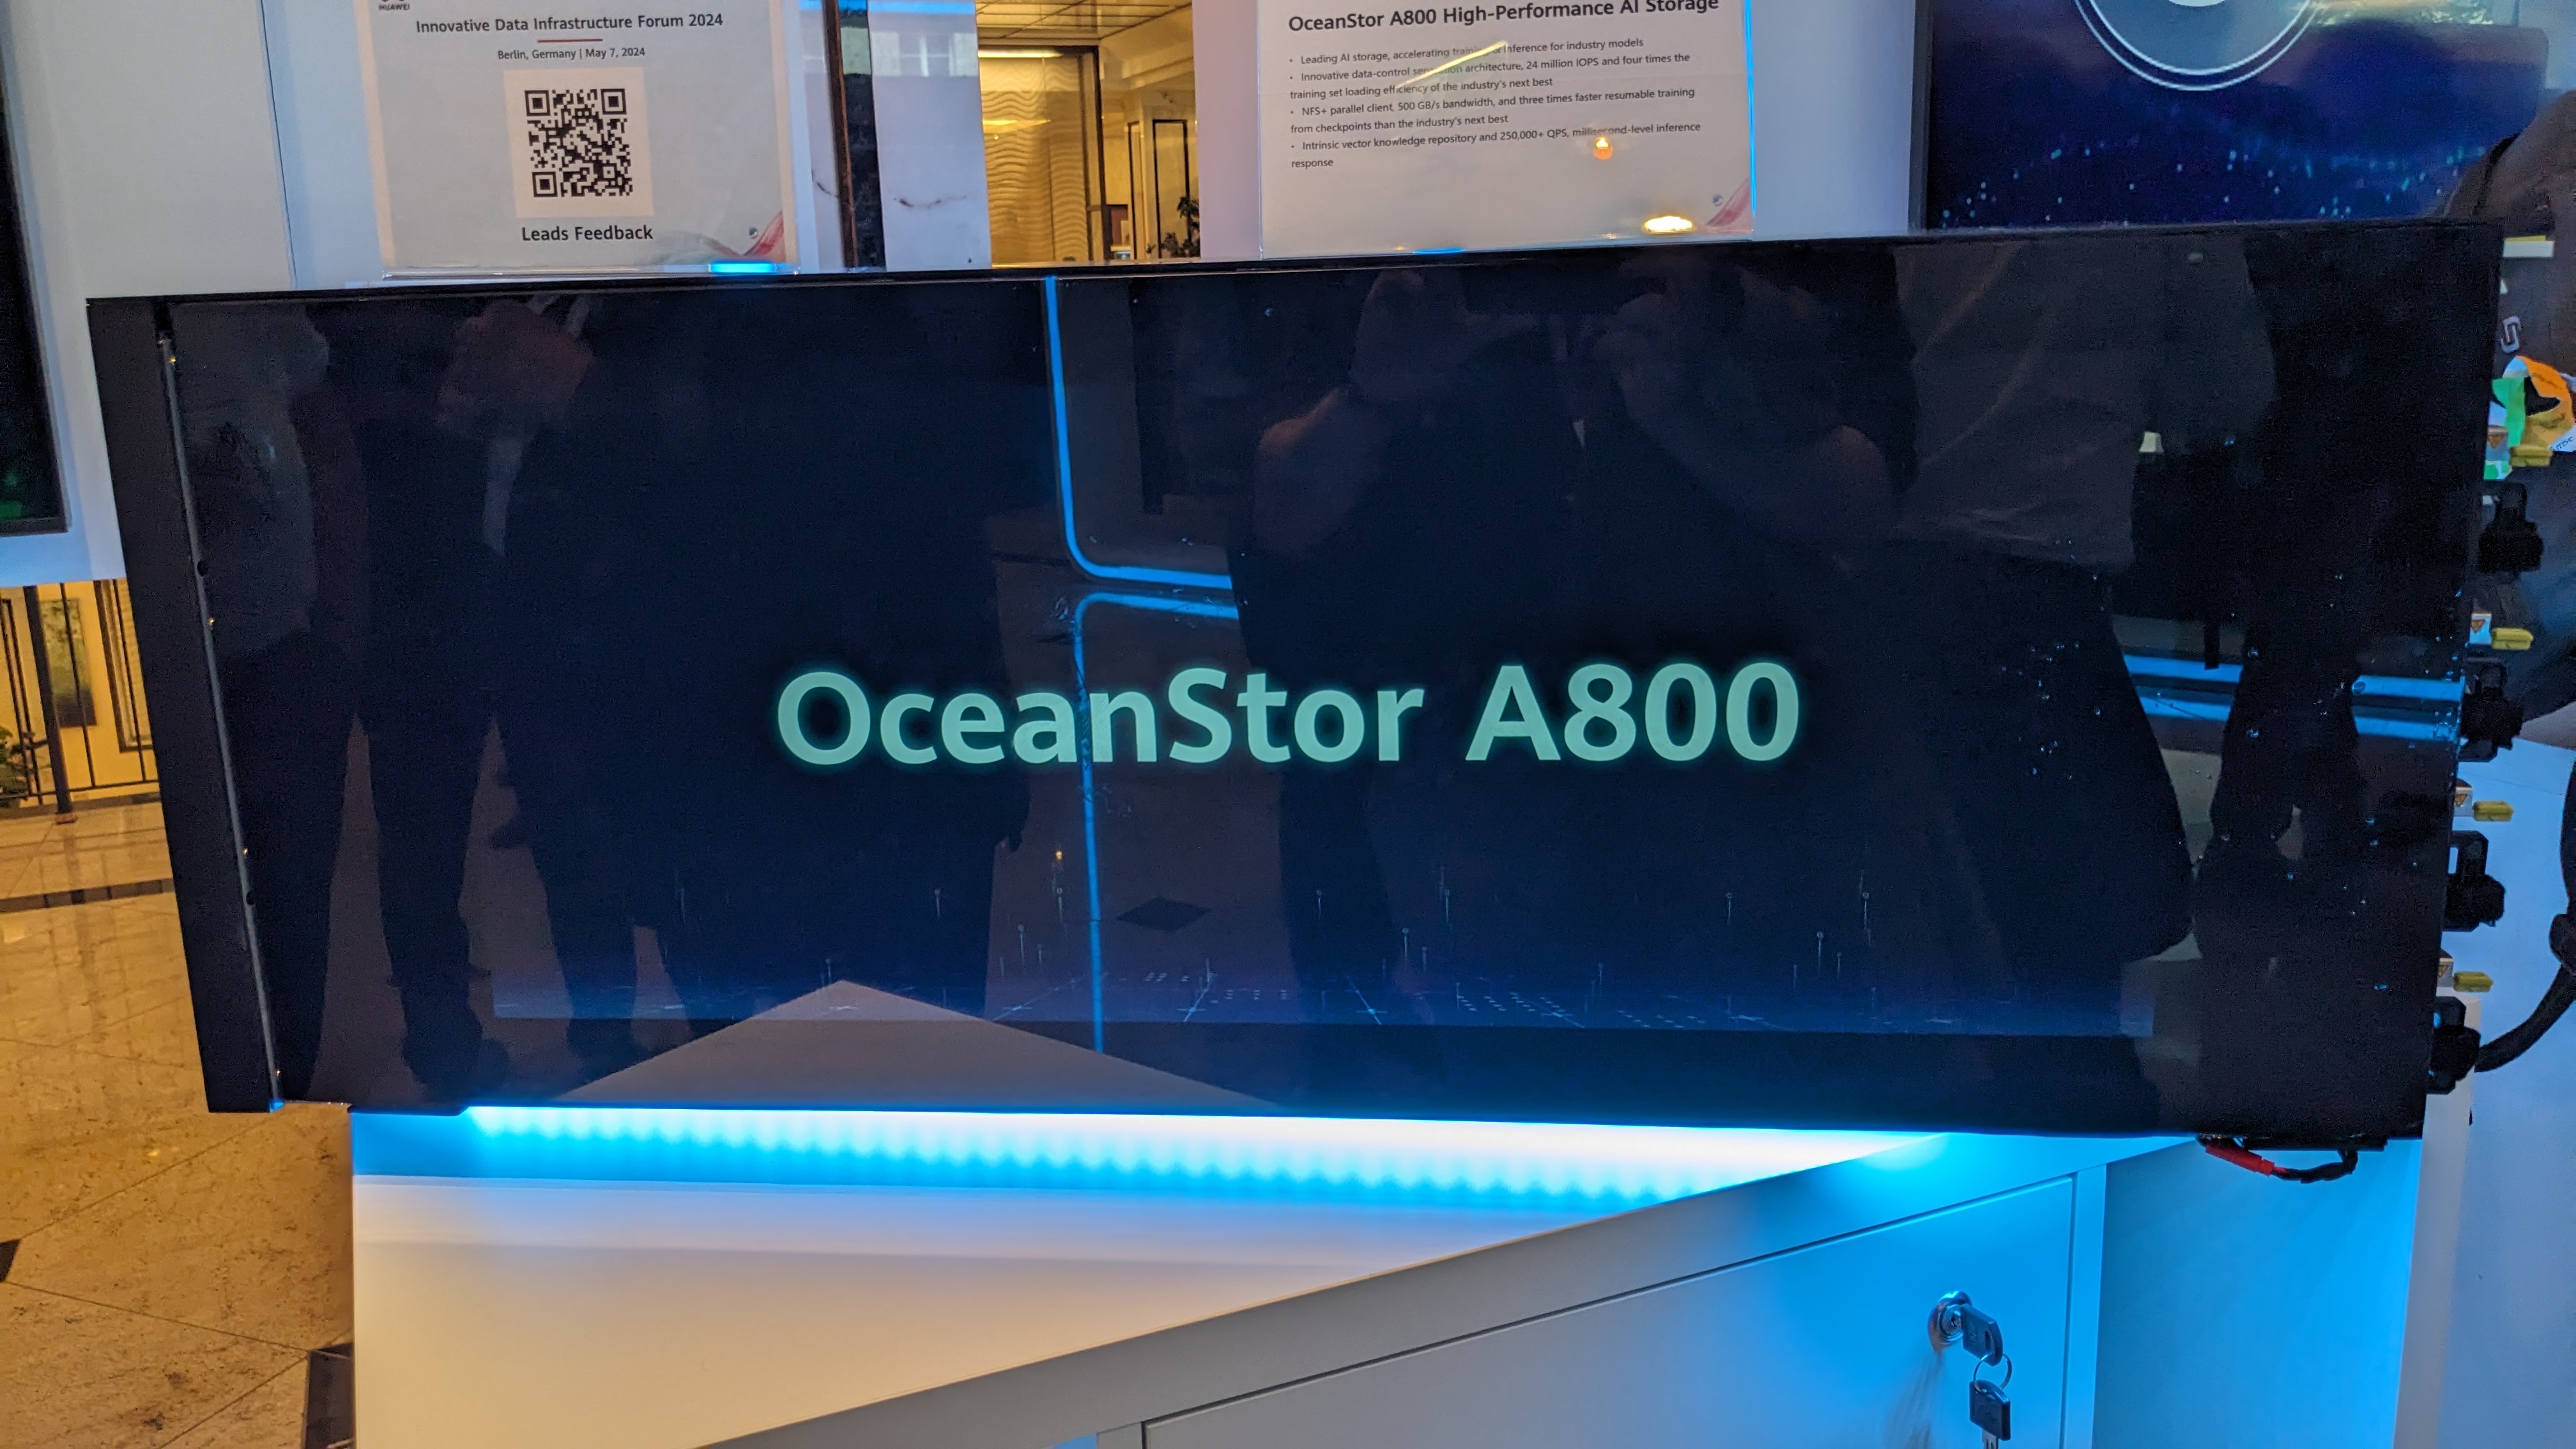 El NAS OceanStor A800 de Huawei se exhibe en IDI